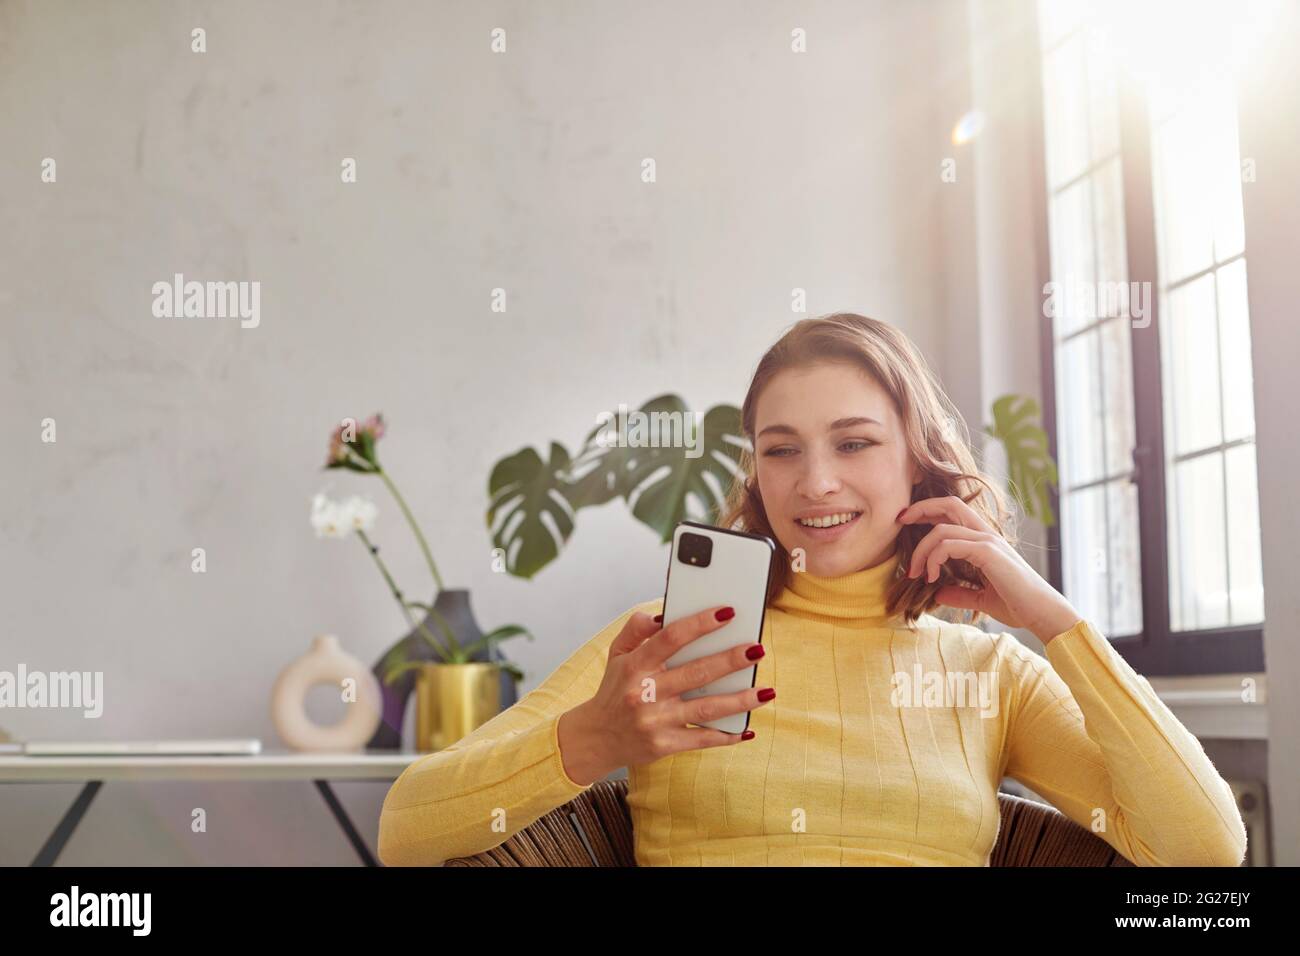 Donna felice in giallo turleneck winking gesto mentre si siede sulla sedia e guardando sul telefono cellulare in uno spazio di lavoro leggero Foto Stock